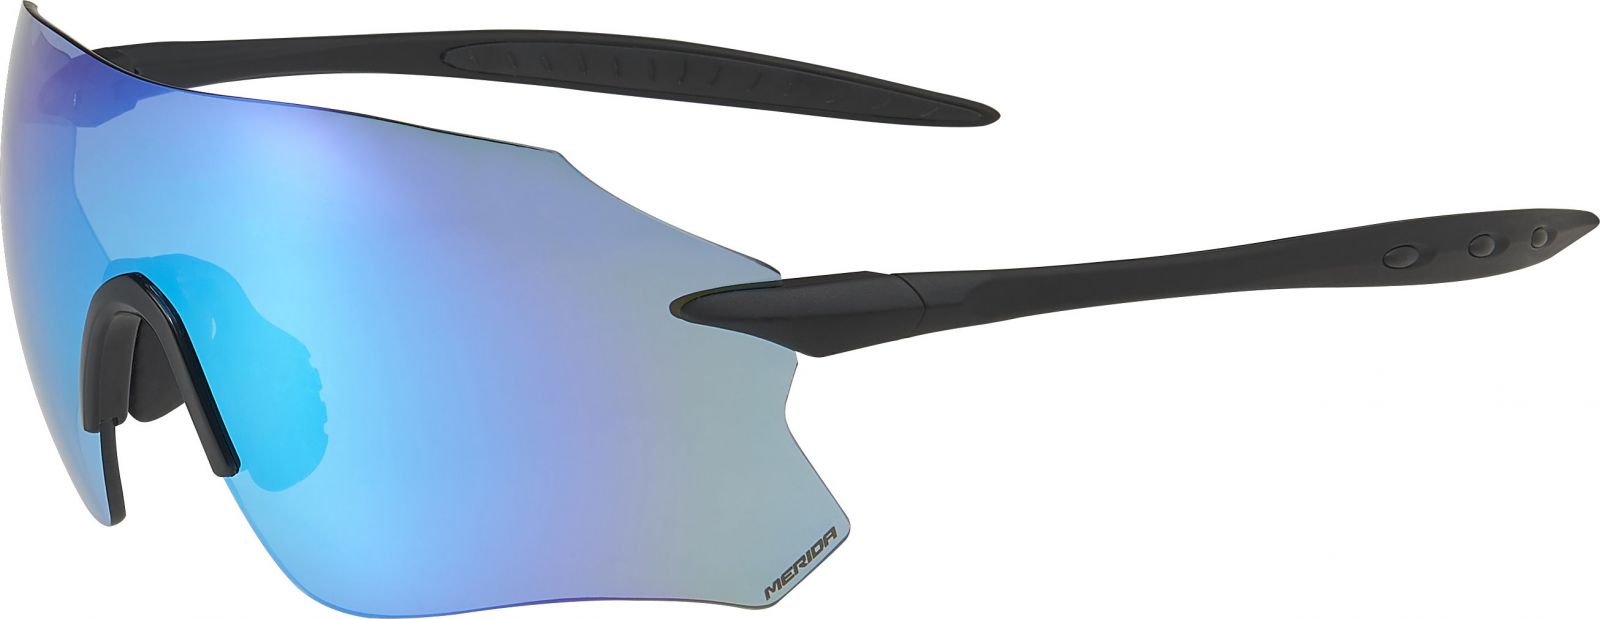 MERIDA - Brýle FRAMELLES 3 černé/modrá